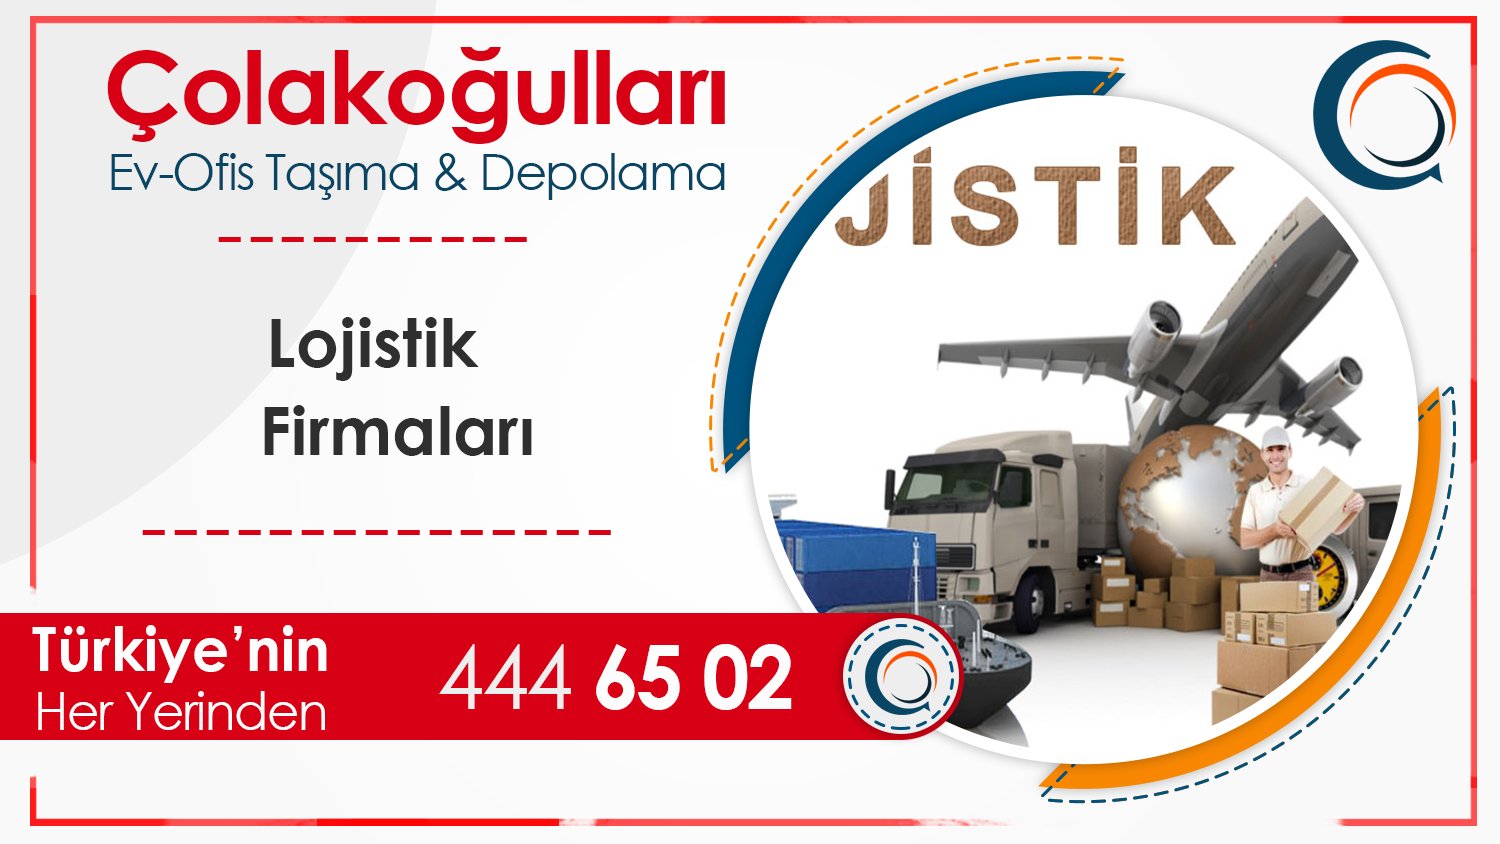 İstanbul Lojistik Şirketleri